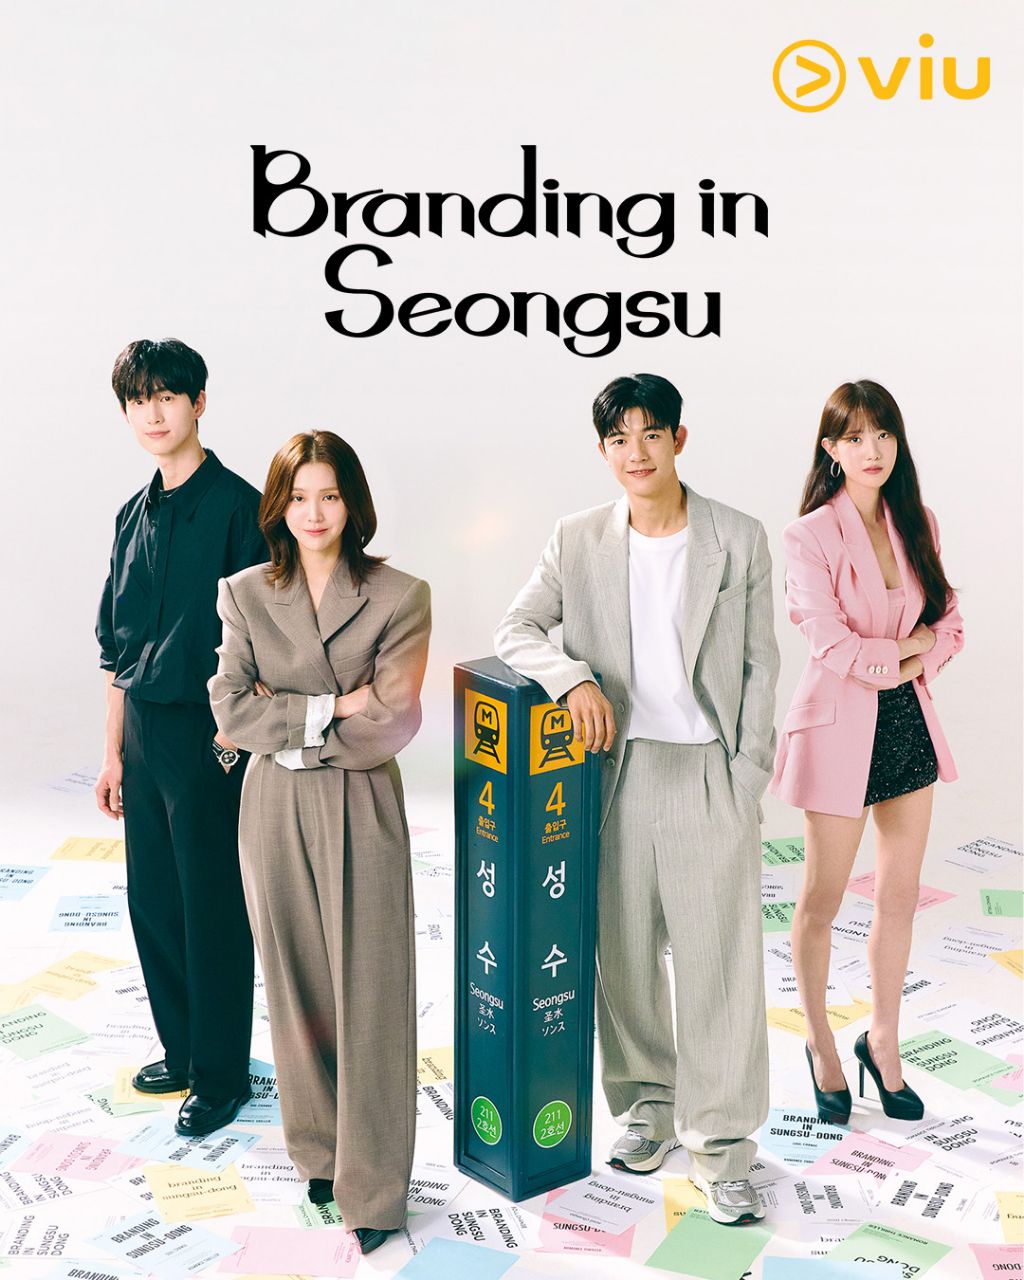 مسلسل العلامة التجارية في سيونغسو Branding in Seongsu الحلقة 16